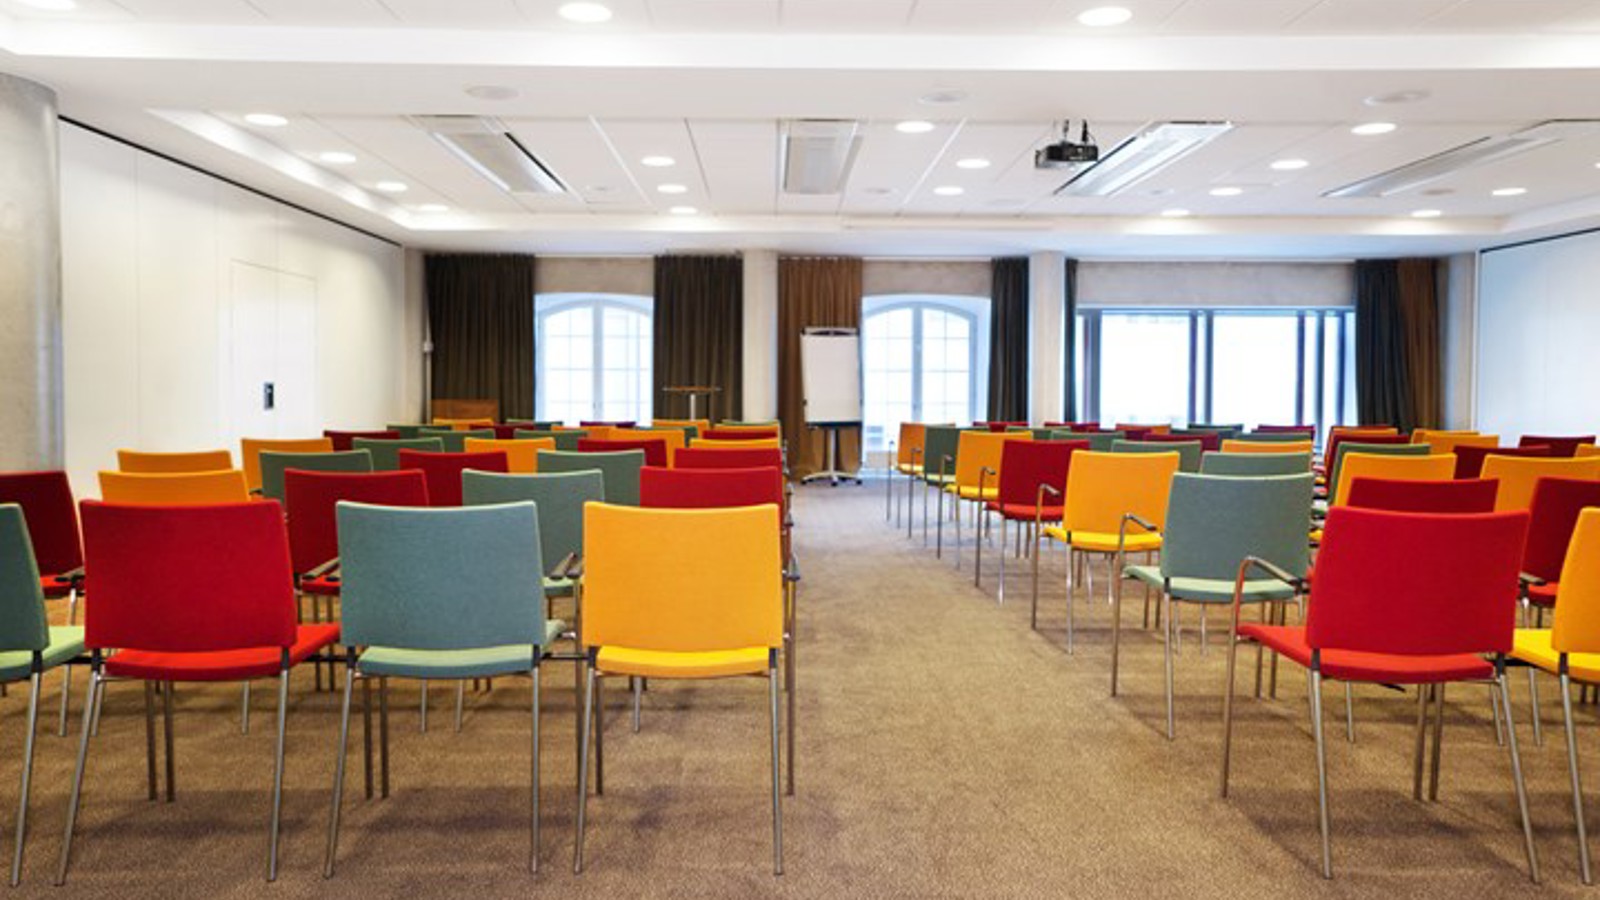 Konferensrum med färgglada stolar, vita väggar och stora fönster